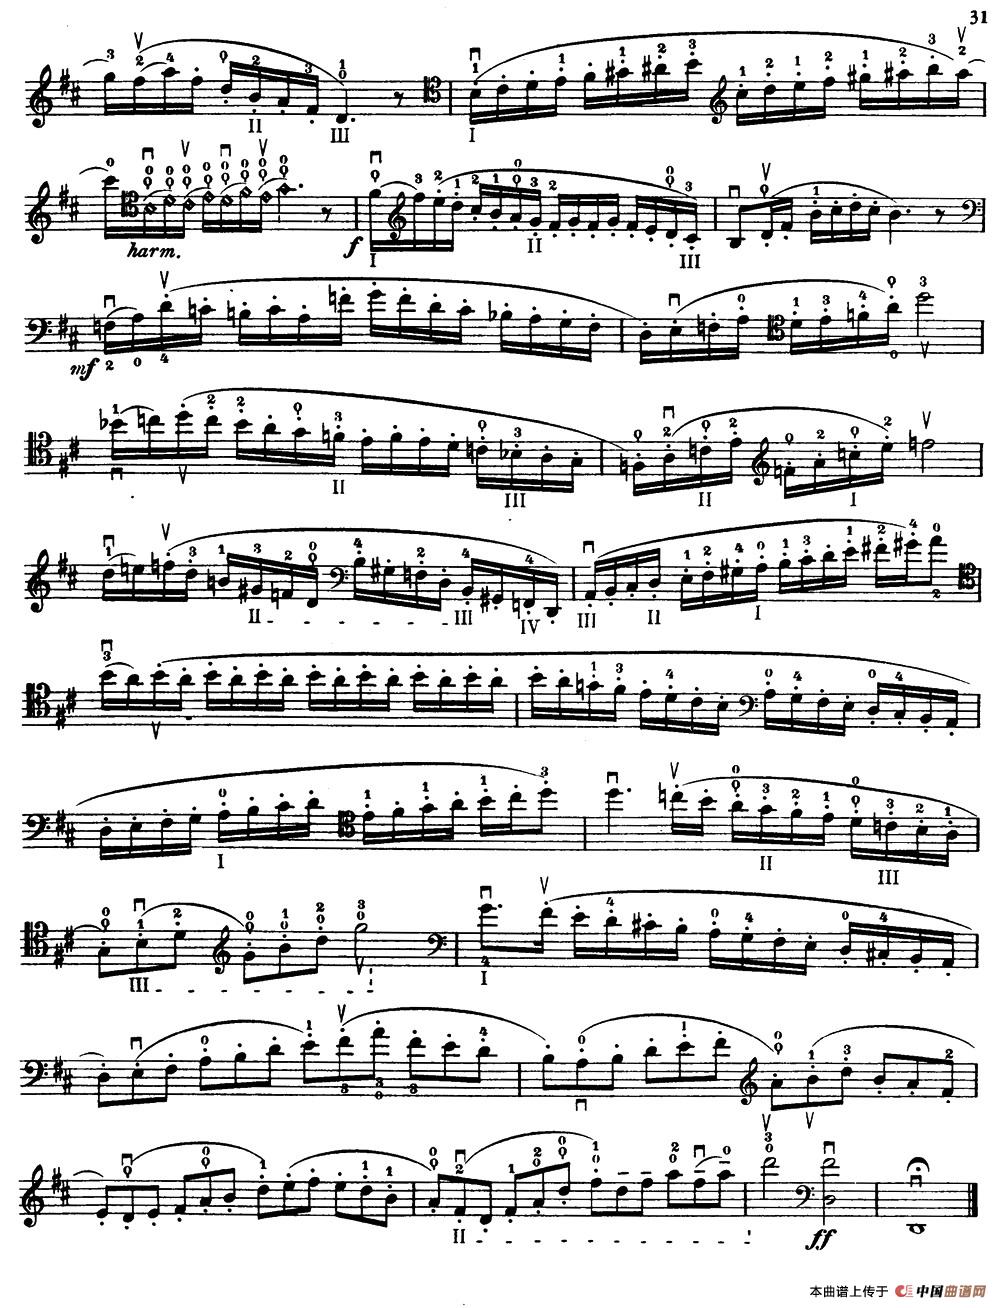 大提琴高级练习曲40首 No.14小提琴谱